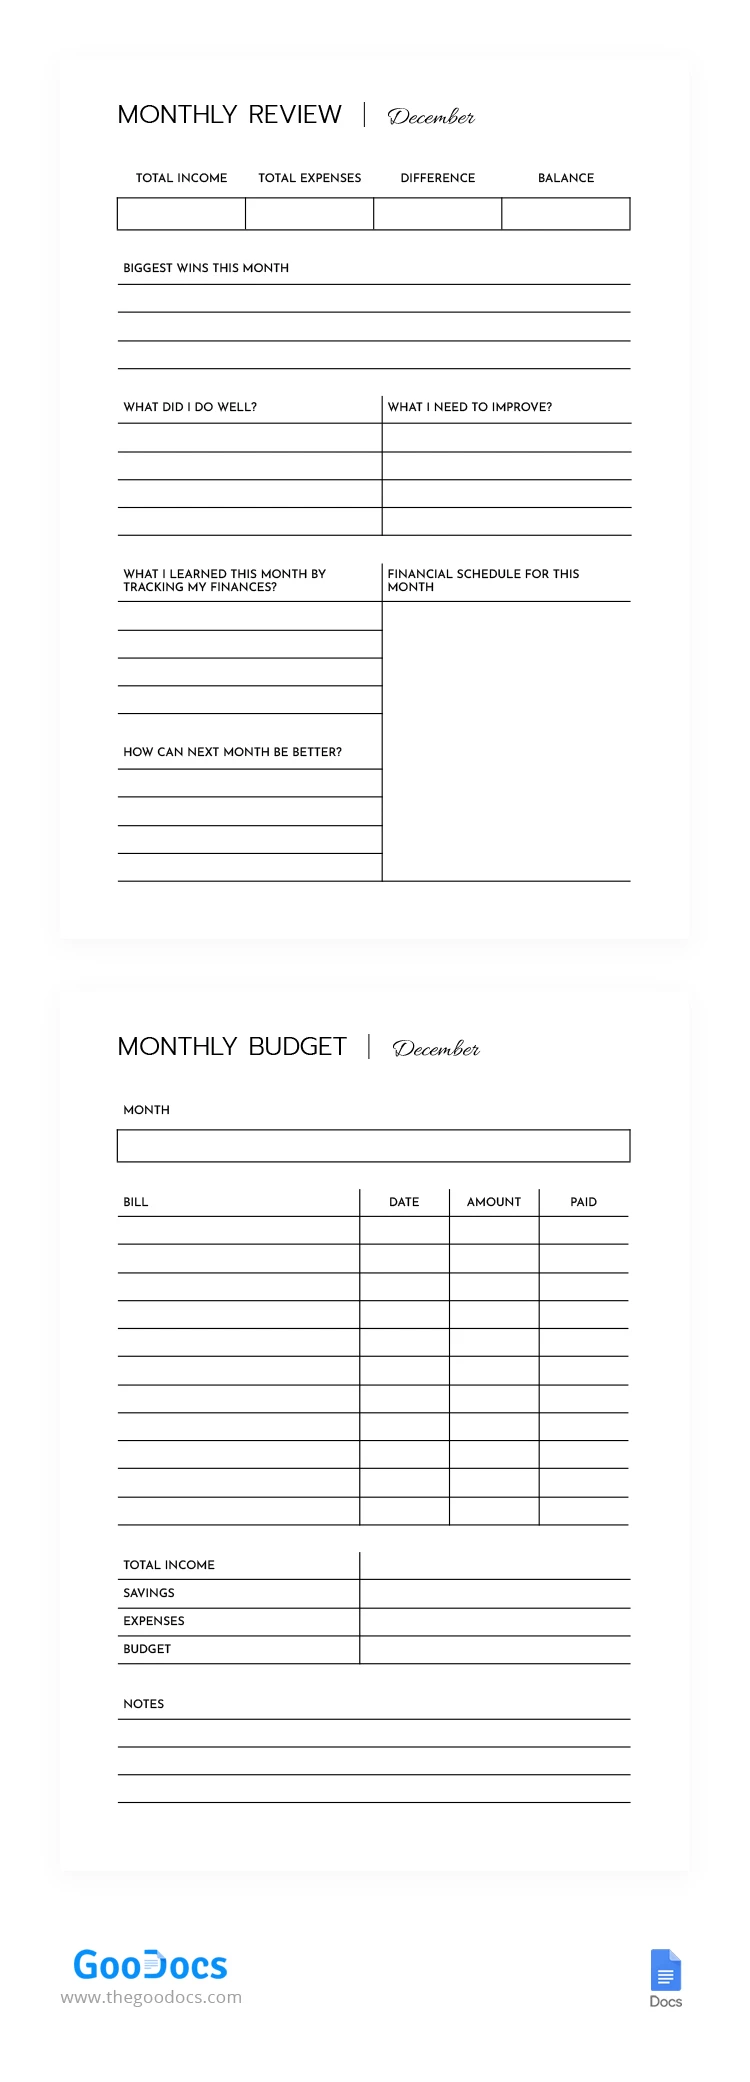 Orçamento Financeiro Mensal - free Google Docs Template - 10068568